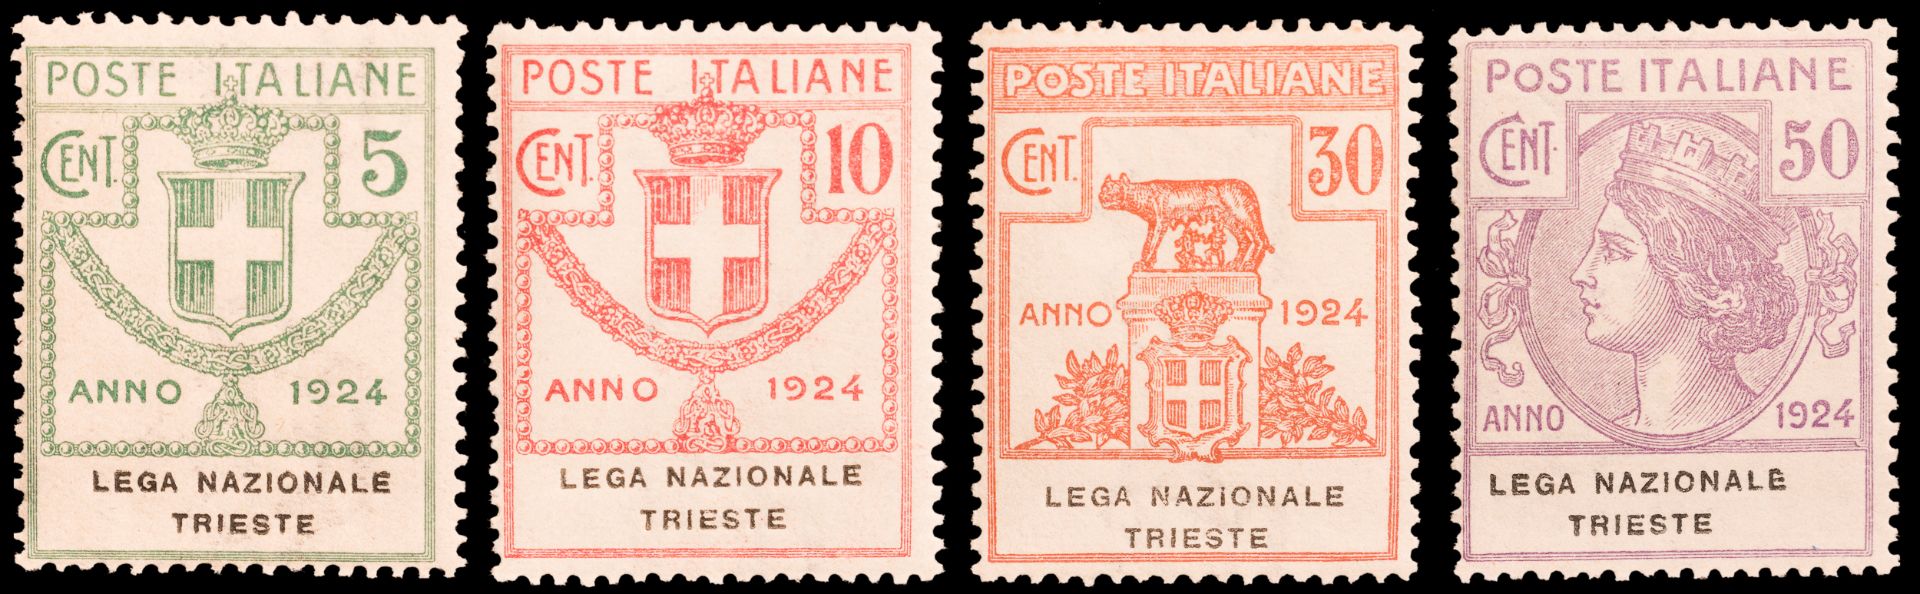 1874/1931, REGNO D'ITALIA - Image 5 of 6